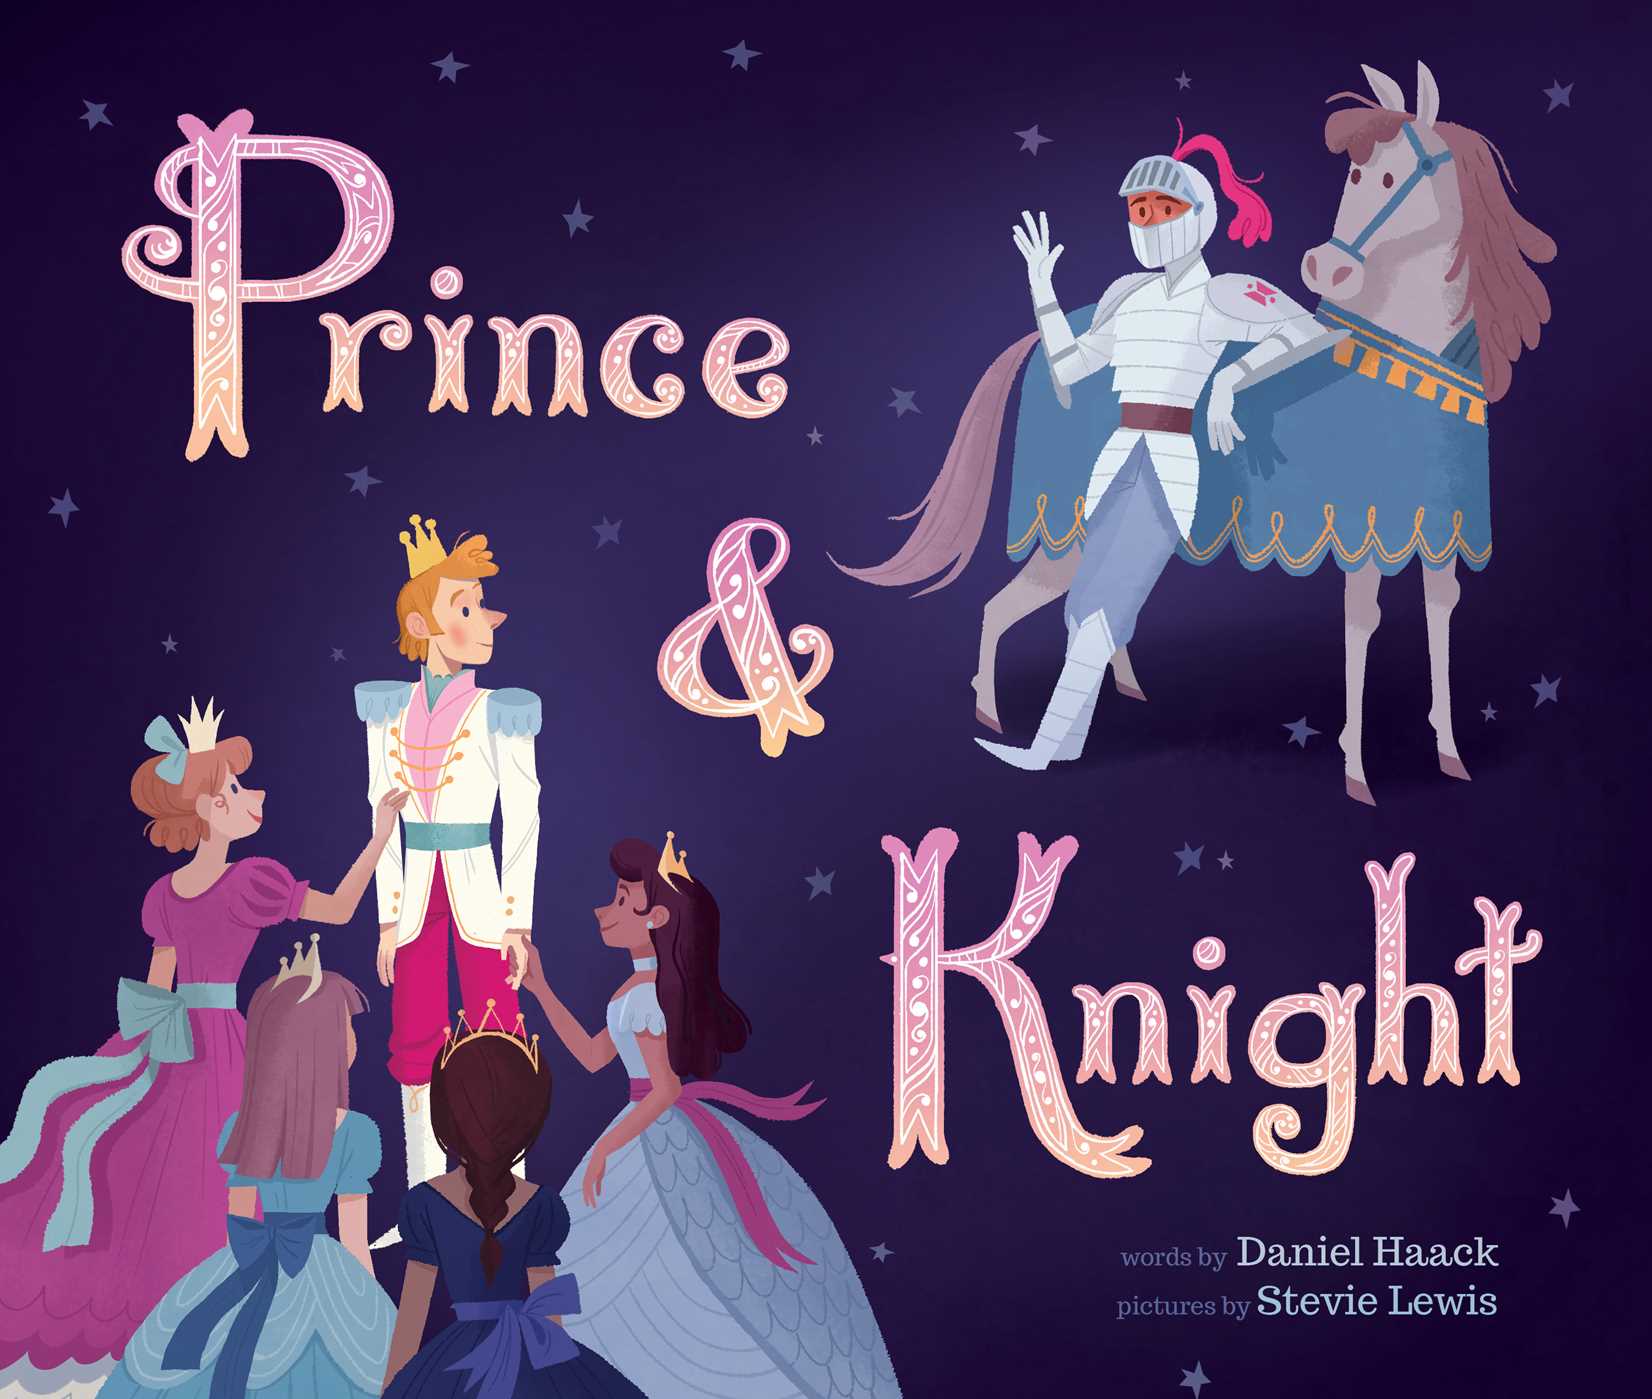 Prince & Knight | Picture & board books